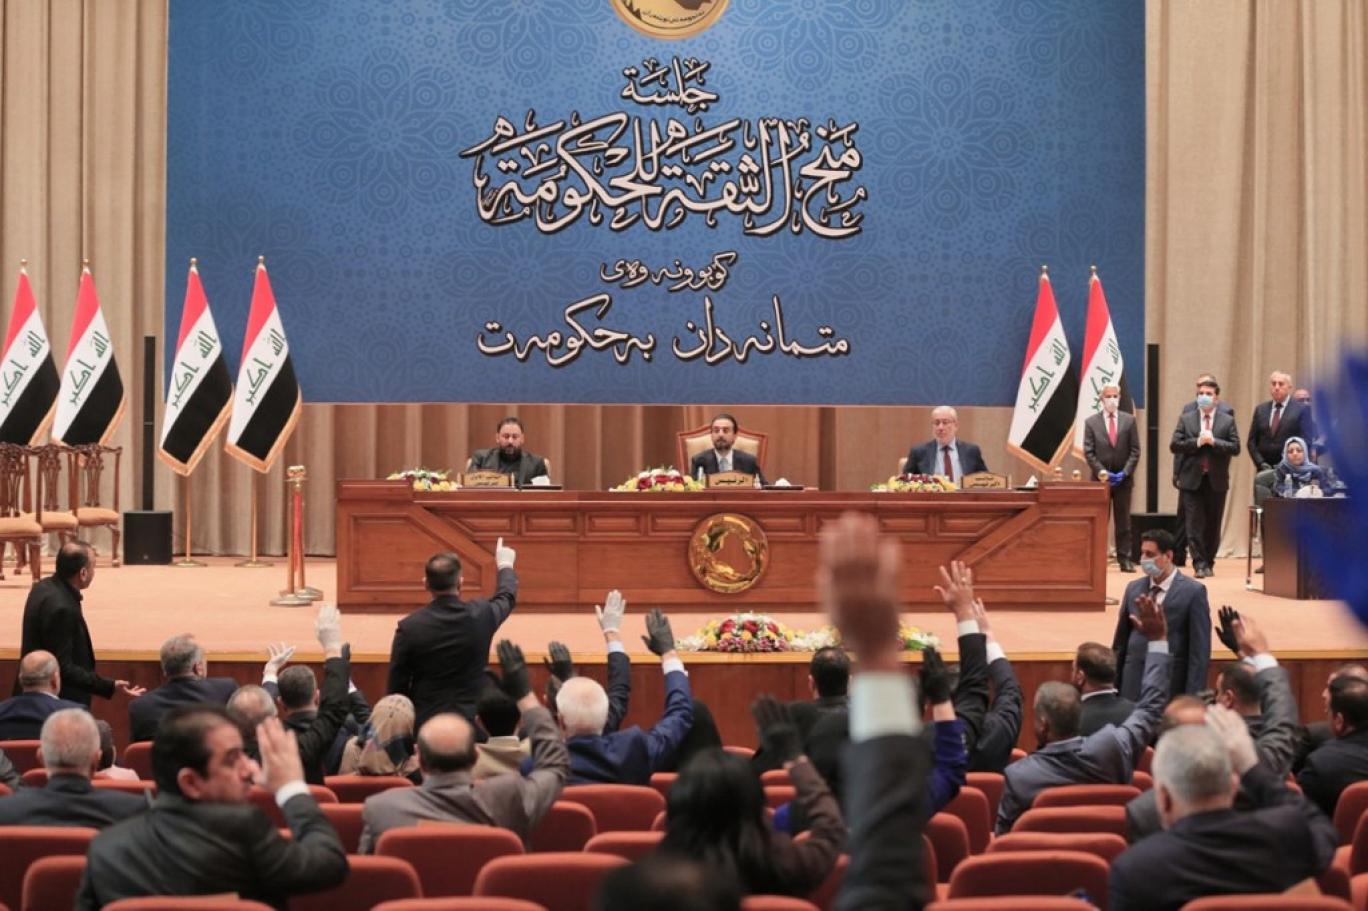 للمرة الثالثة.. برلمان العراق يخفق في جلسة انتخاب رئيس البلاد